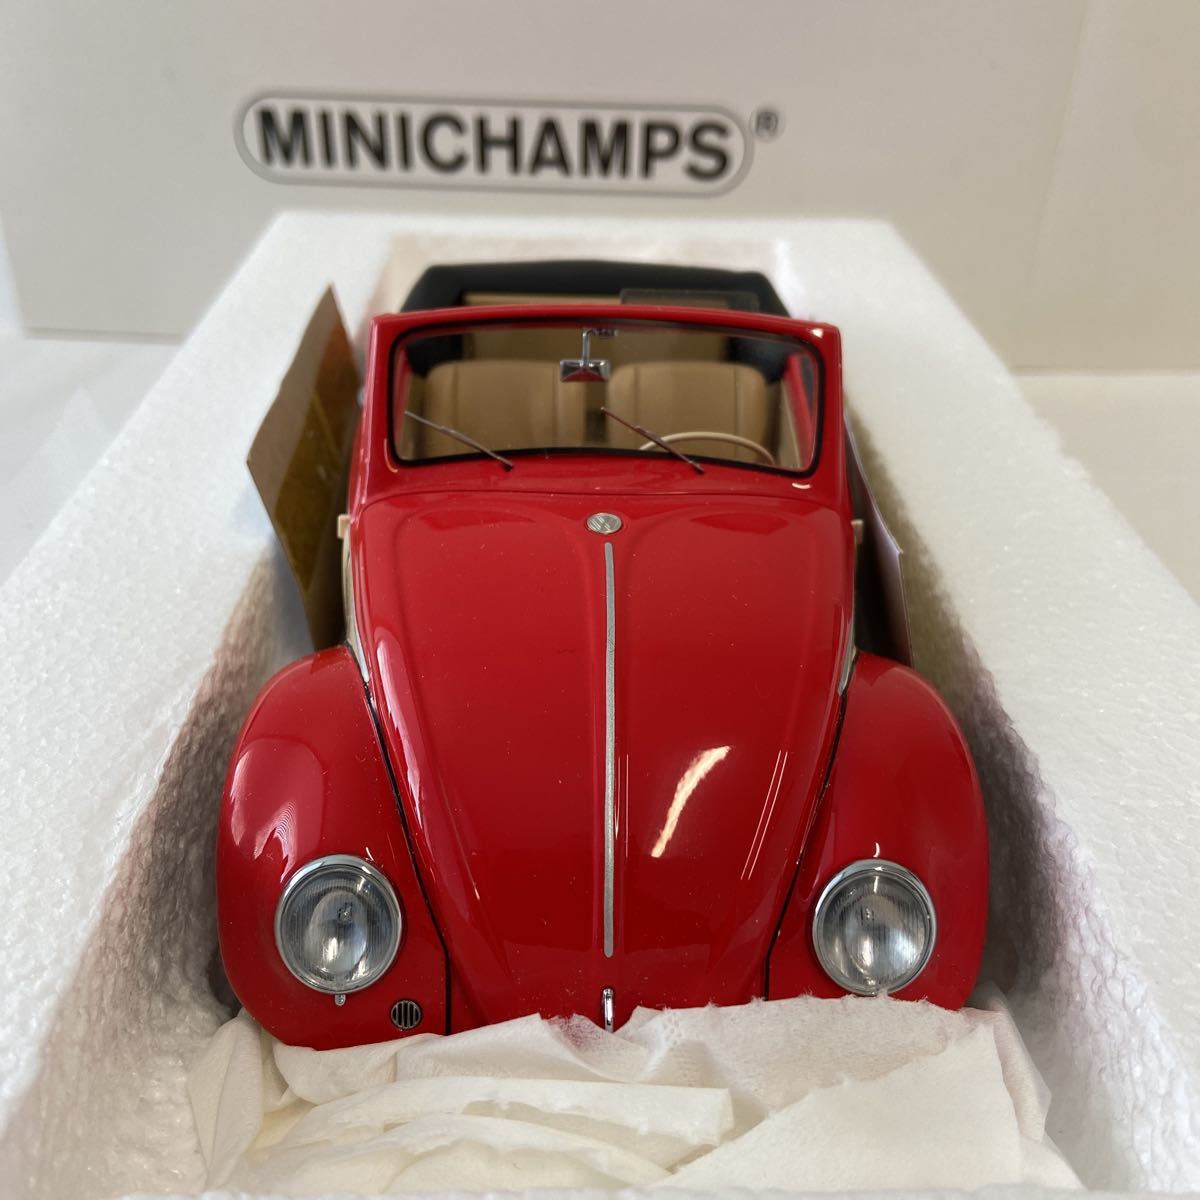 MINICHAMPS 1/18 Volkswagen Beetle Convertible Hebmuller 1949 год Red Cream Volkswagen Beetle с откидным верхом миникар 